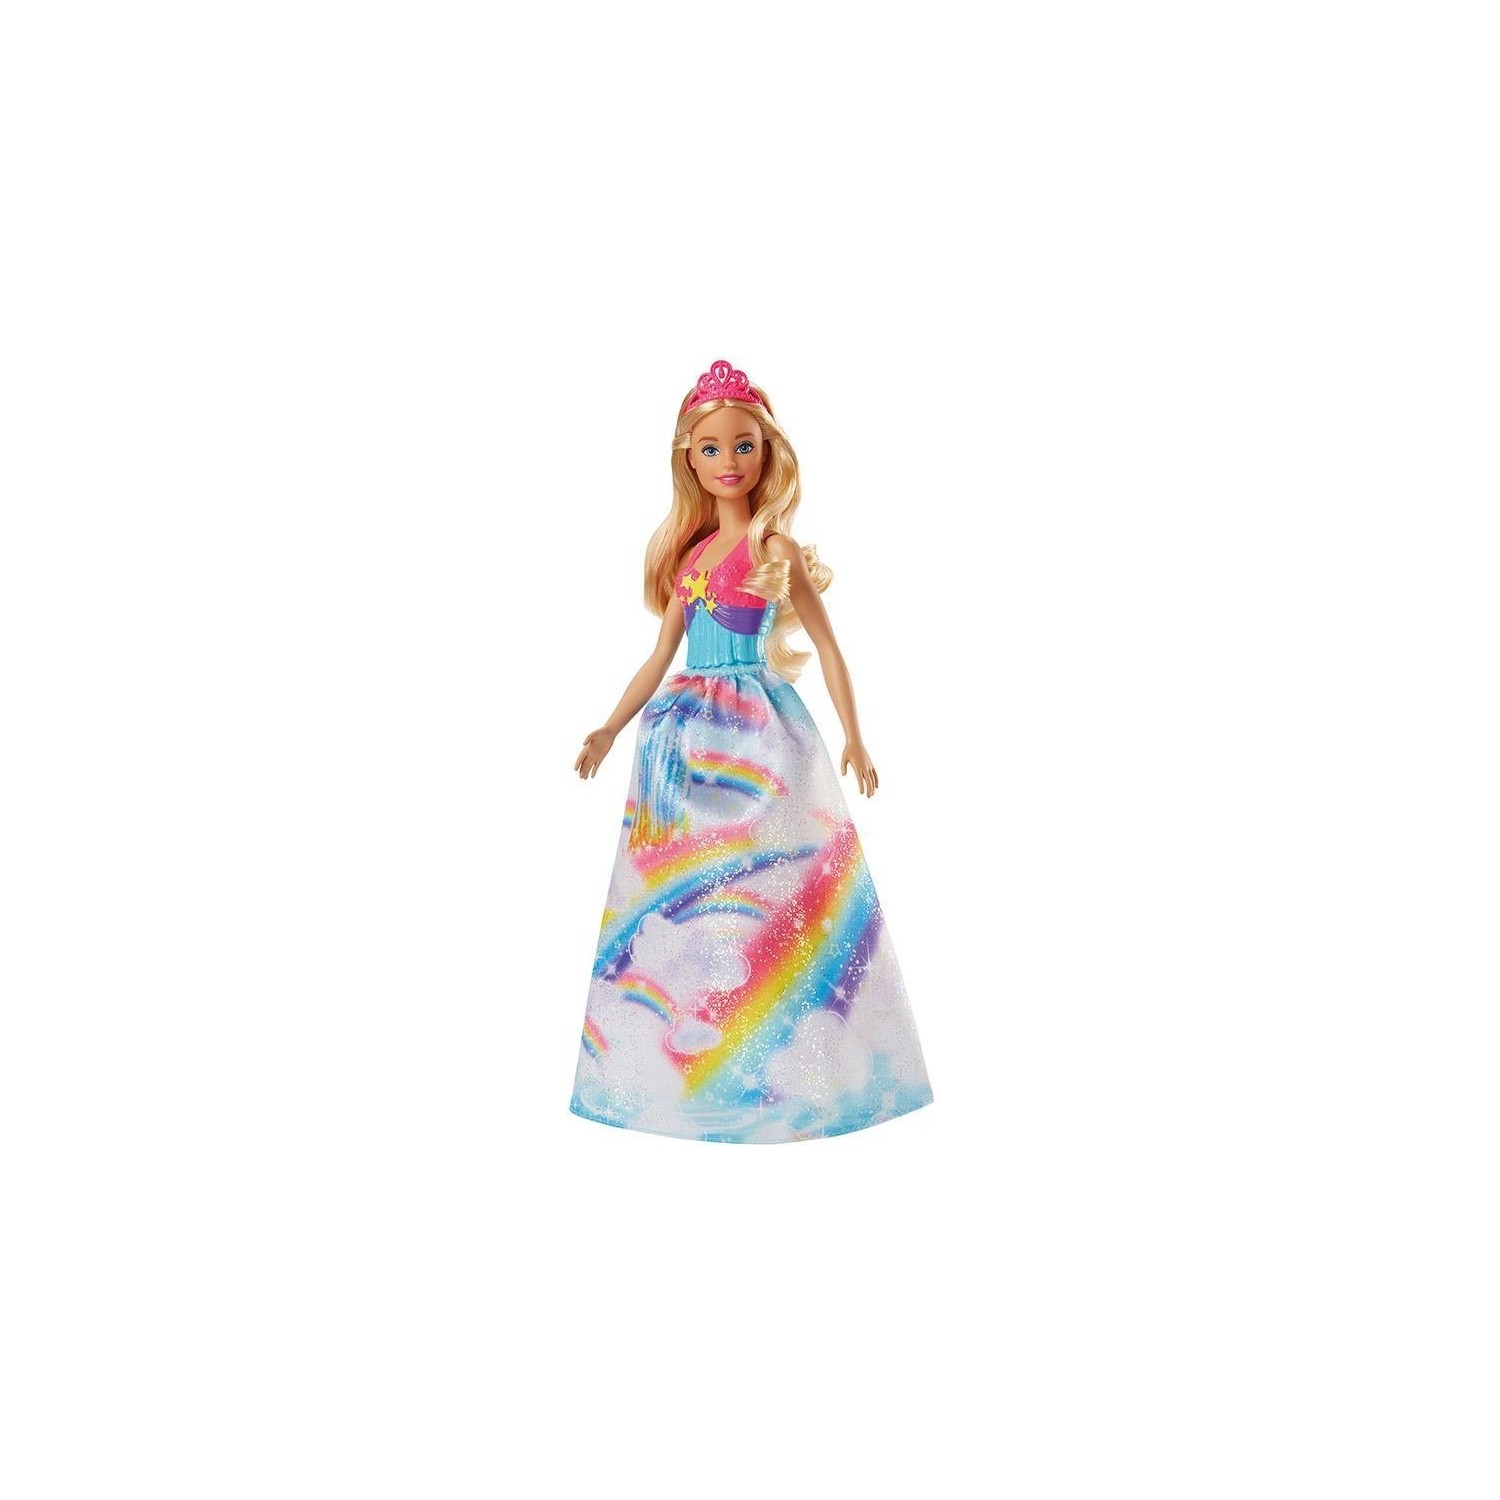 Кукла Barbie Dreamtopia Princess Dolls Fjc94 игровой набор barbie dreamtopia candy kingdom sato